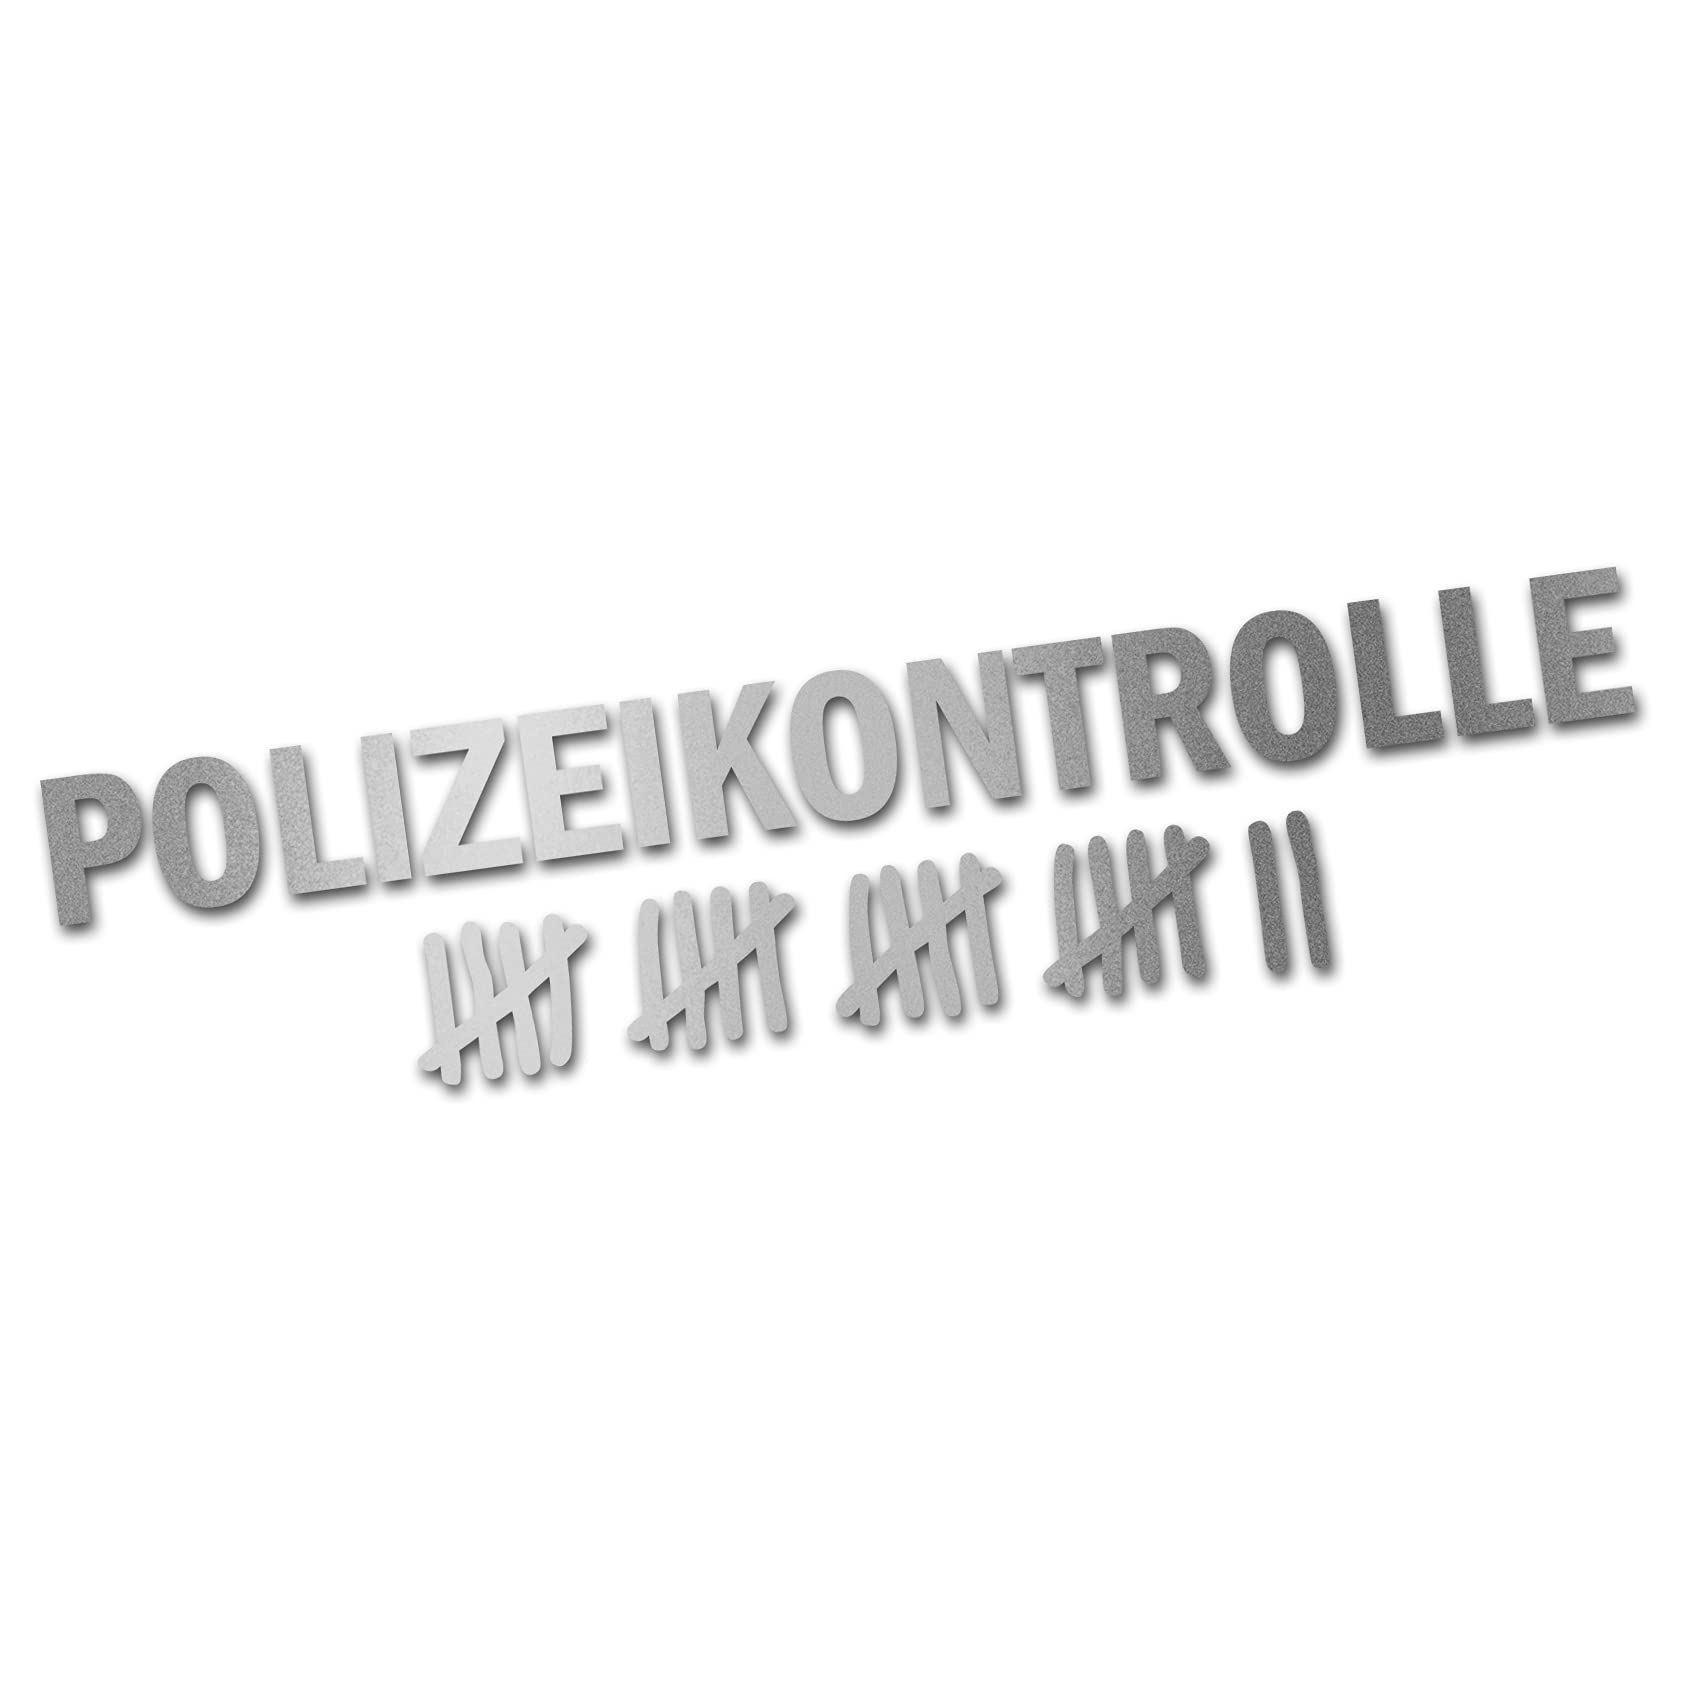 Finest Folia Autoaufkleber Polizeikontrolle 20x4,5cm Fun Sticker lustig für Auto Bus LKW Motorrad Fahrrad Tuning Aufkleber Kfz Zubehör waschstraßenfest K152 (Silber) von Finest Folia